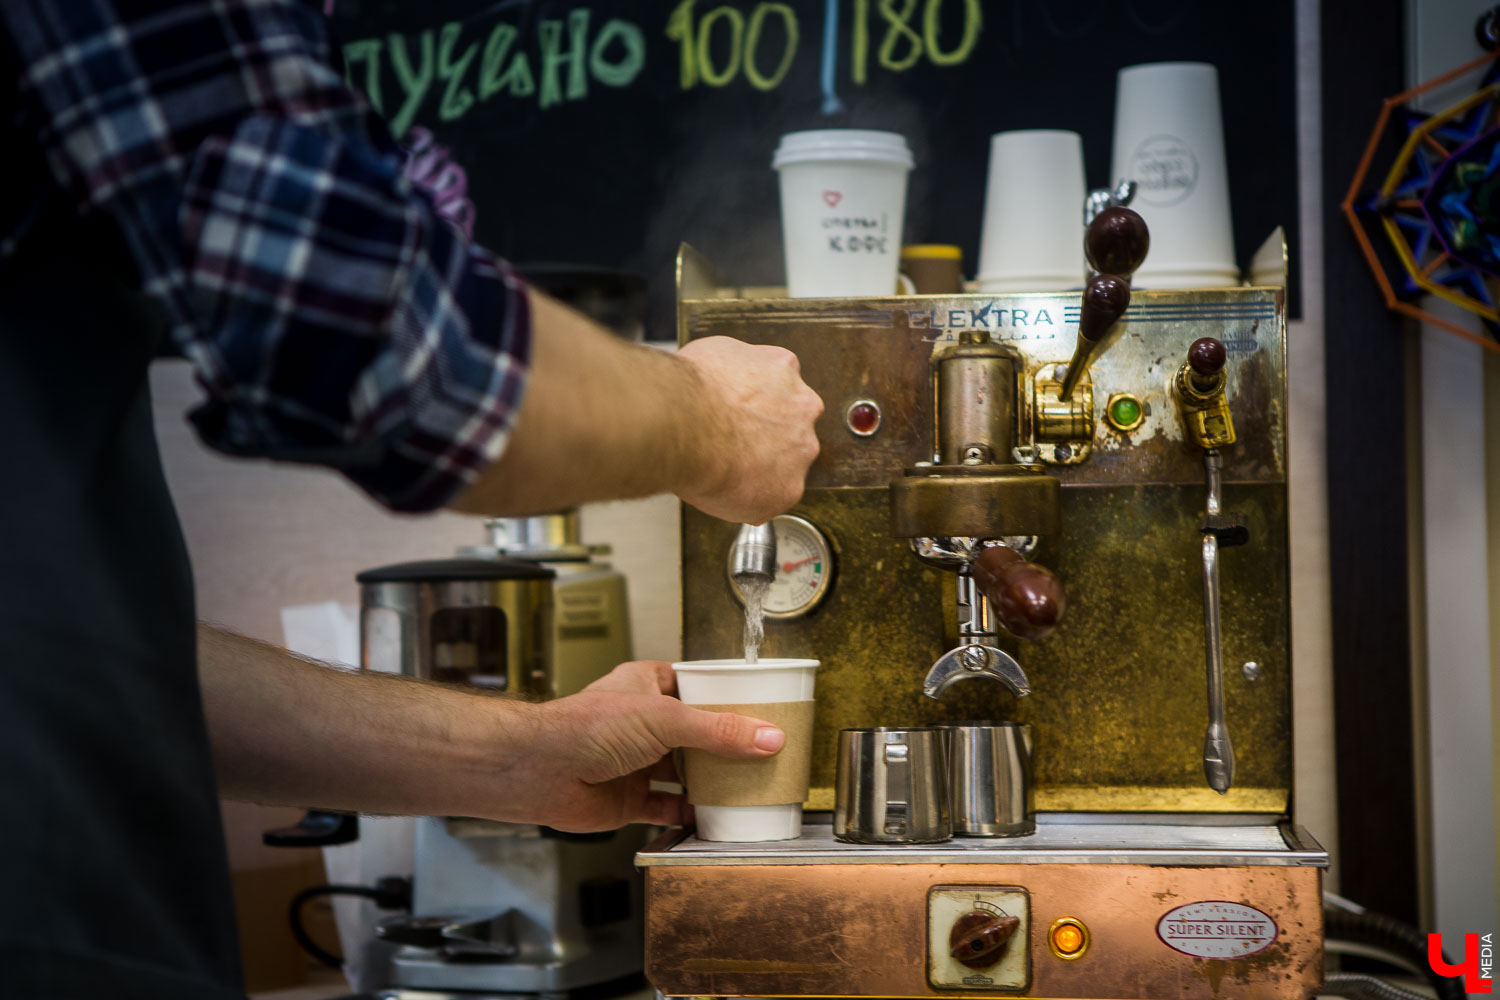 Итальянская кофе машина ручной сборки “Elektra”